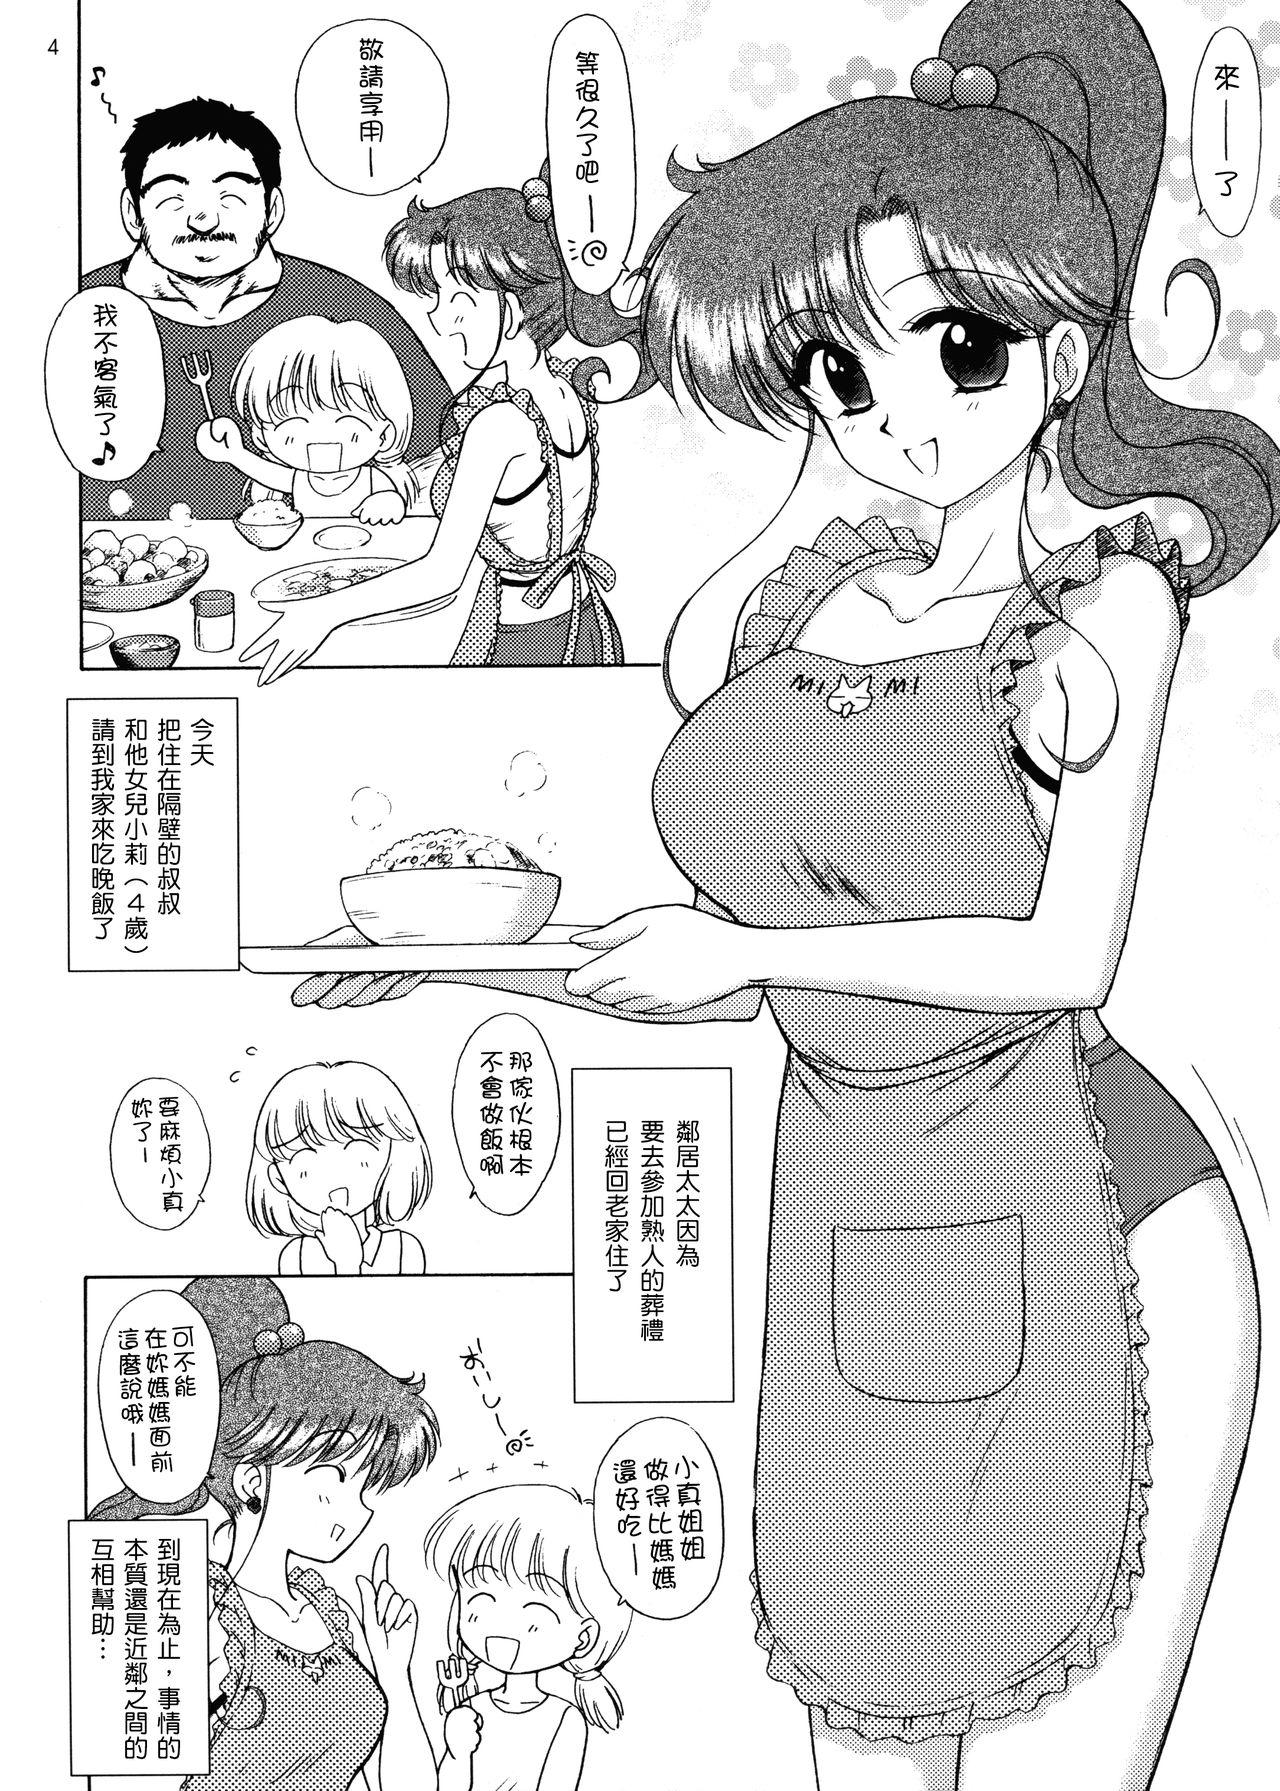 Chat IN A SILENT WAY - Sailor moon | bishoujo senshi sailor moon Tittyfuck - Page 4